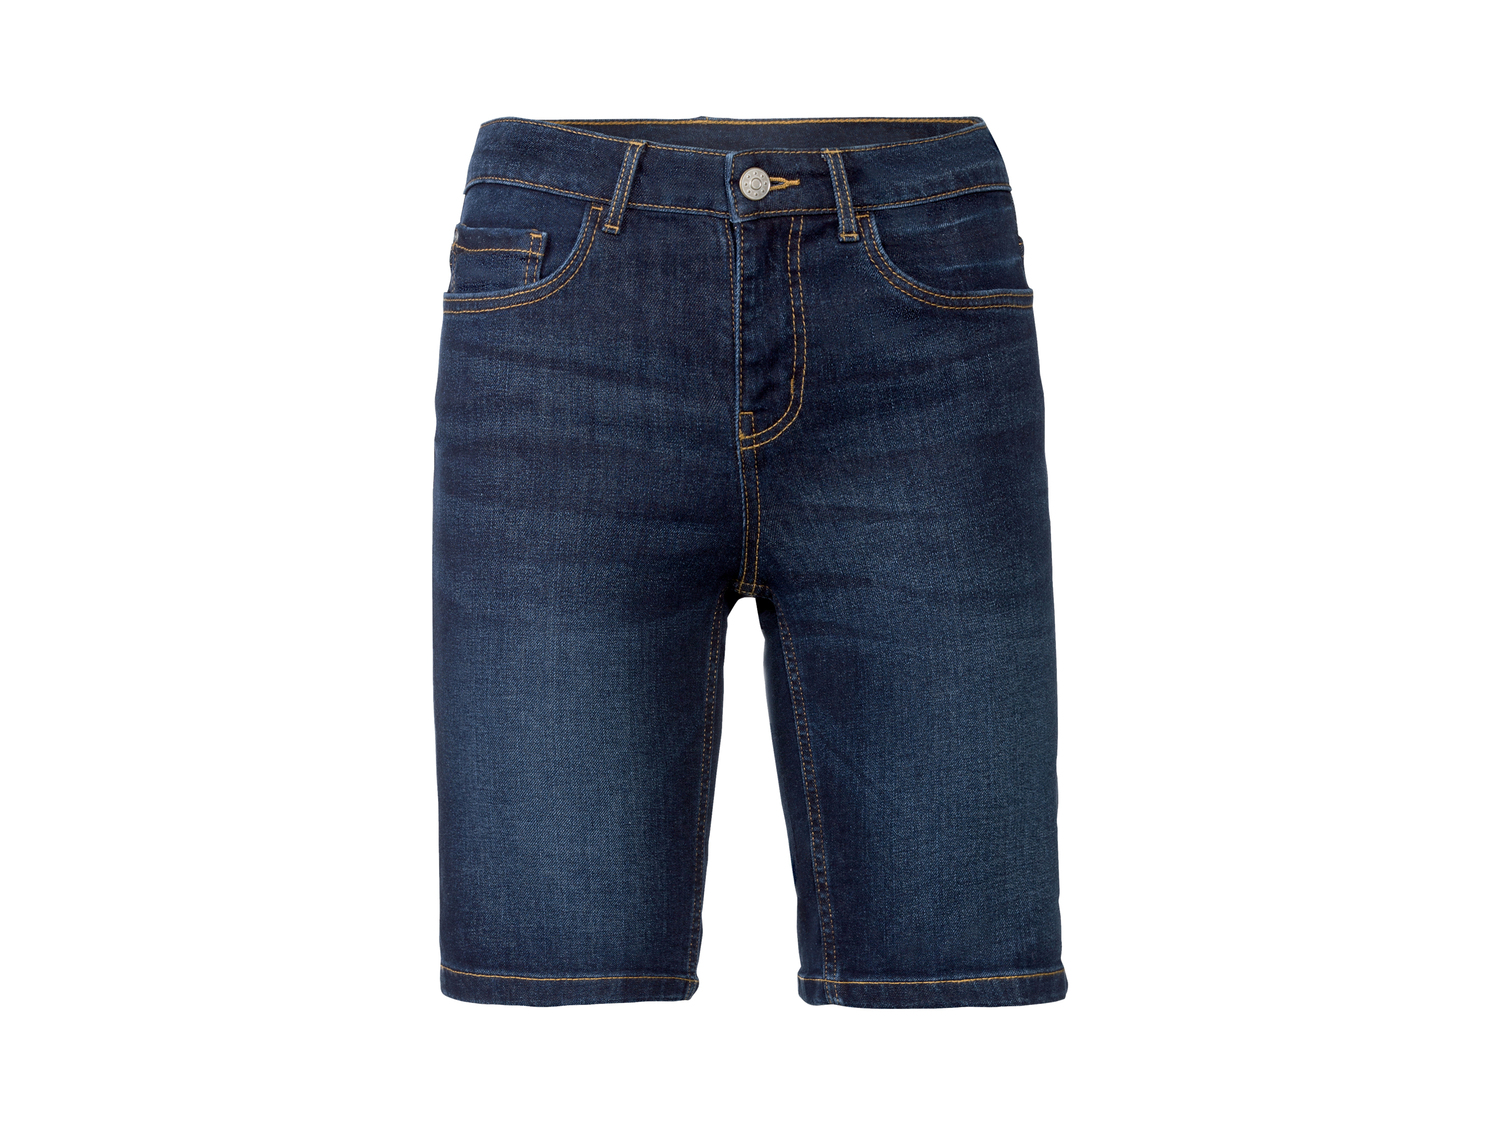 Bermuda in jeans da donna Esmara, prezzo 7.99 &#8364; 
Misure: 38- 48
Taglie ...